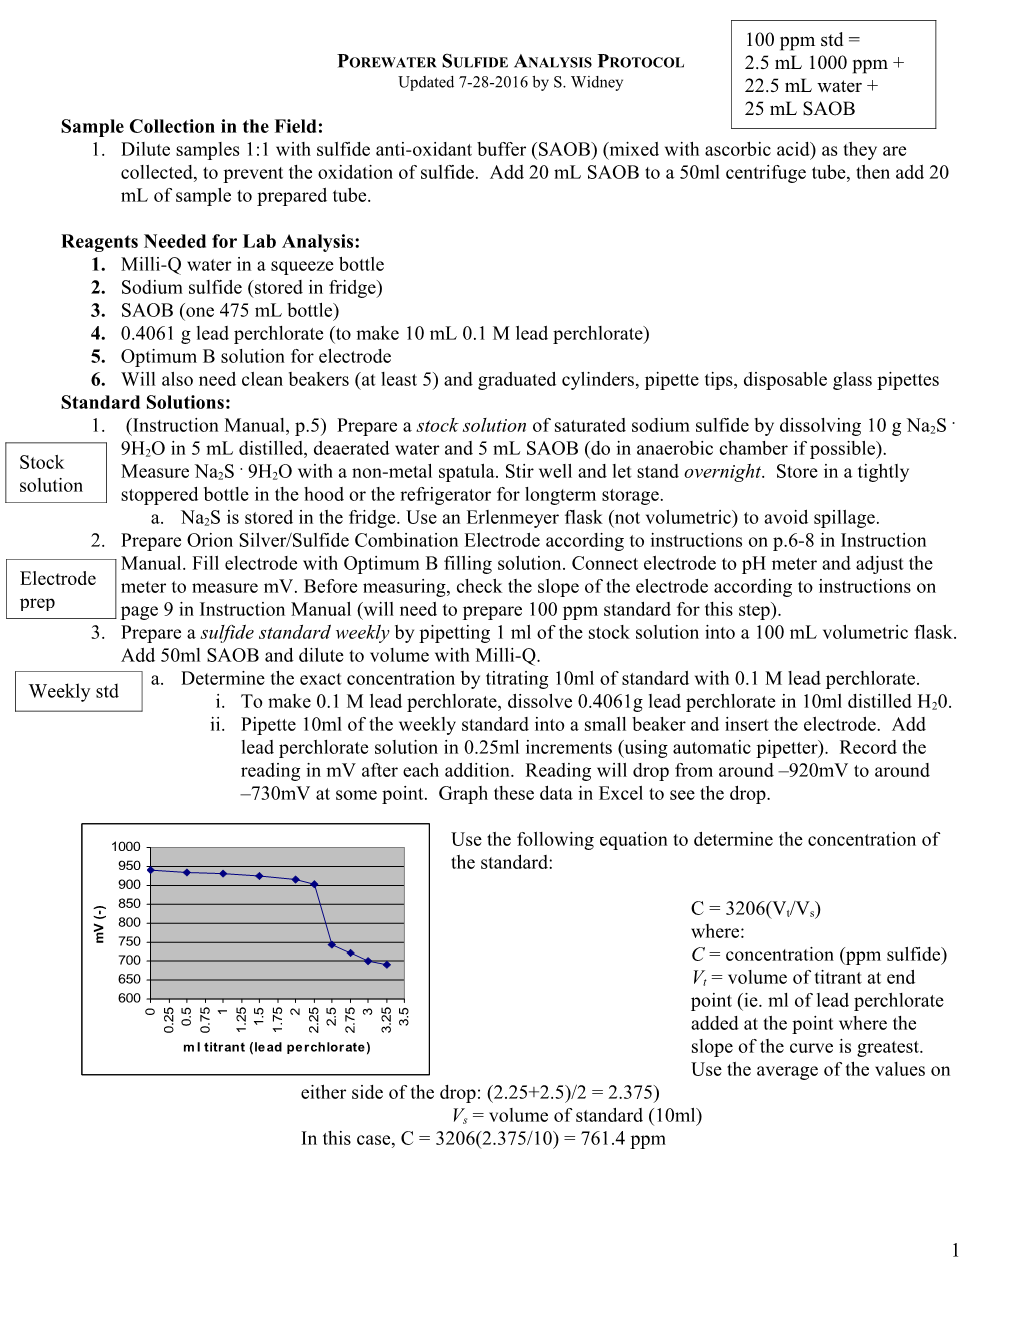 Sulfide Analysis Protocol